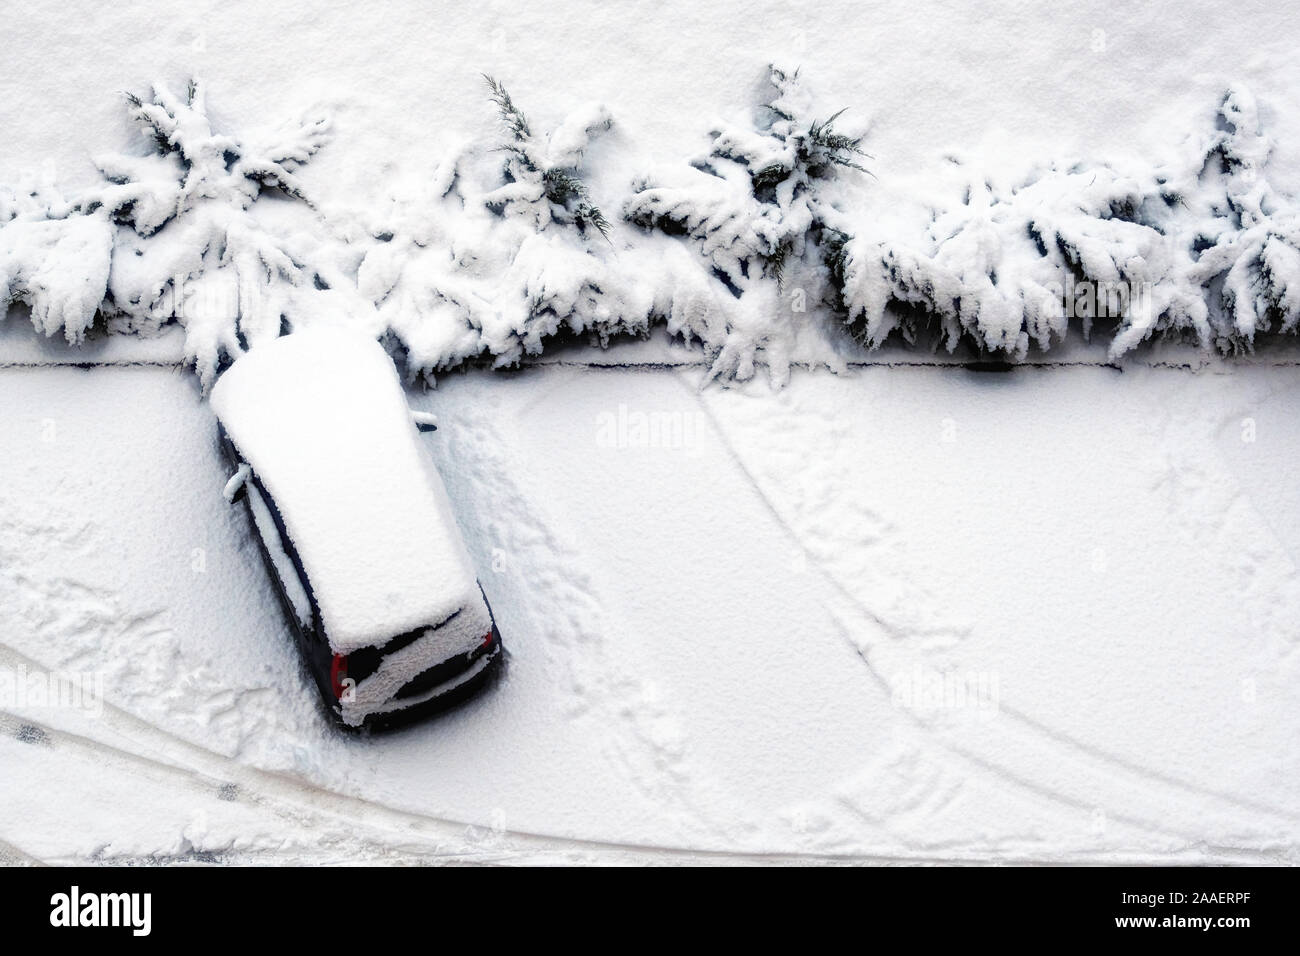 Paysage d'hiver dans le parking situé en zone résidentielle. Des villes d'hiver, les arbres, le gel. Banque D'Images